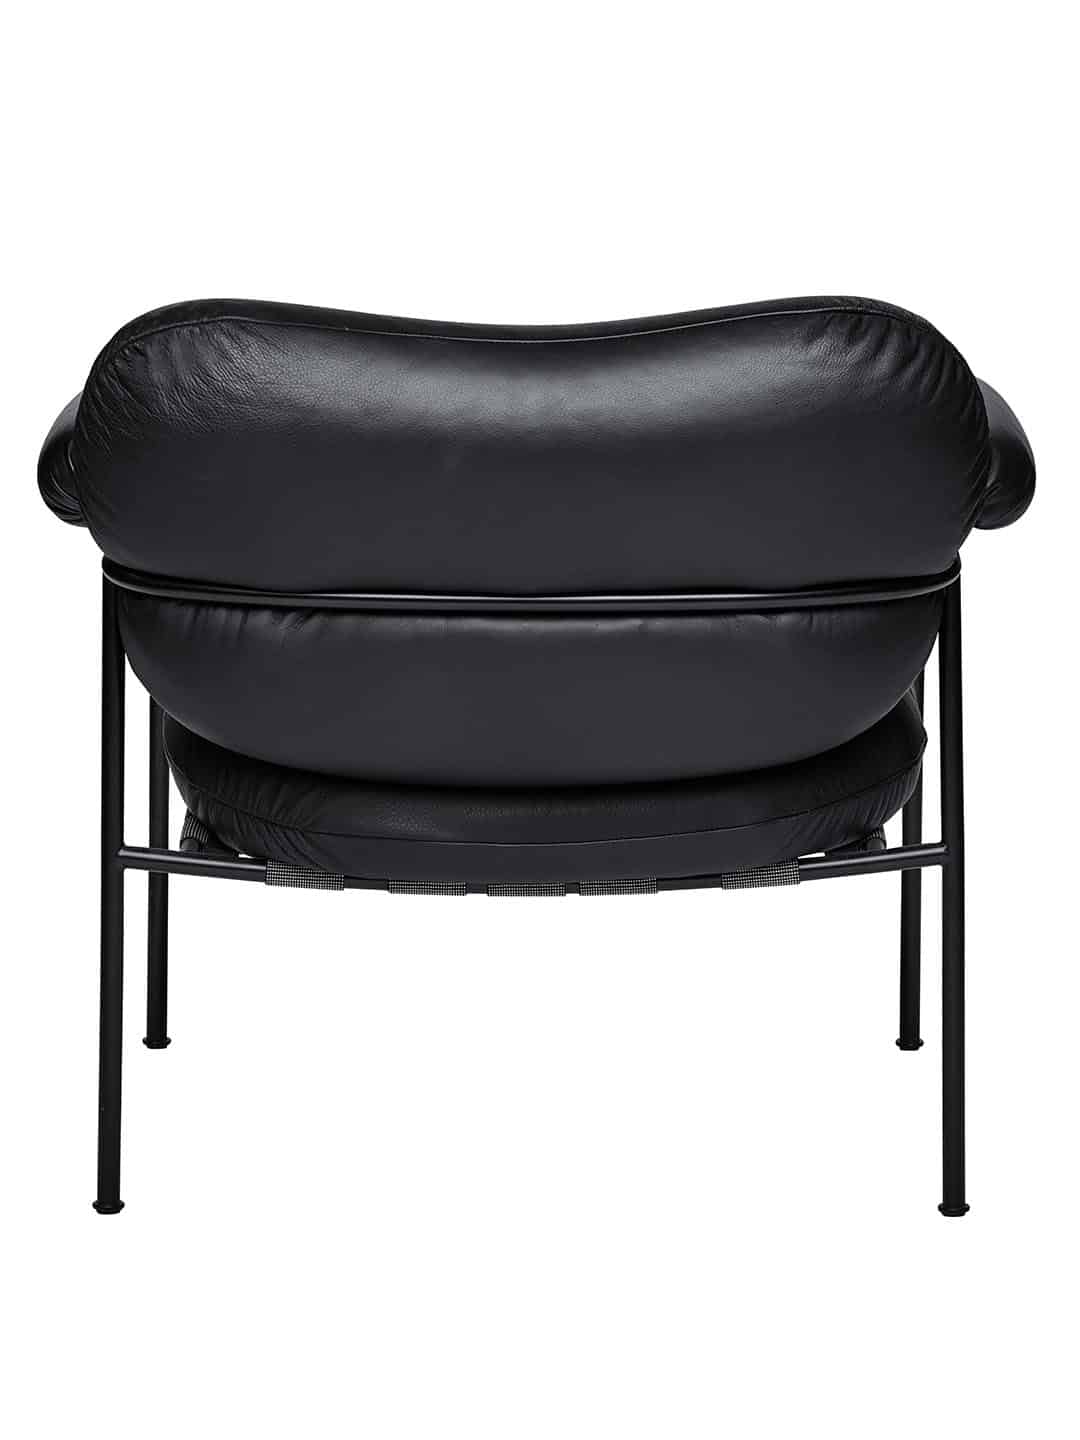 Стильное кресло Fogia Bollo из черной кожи